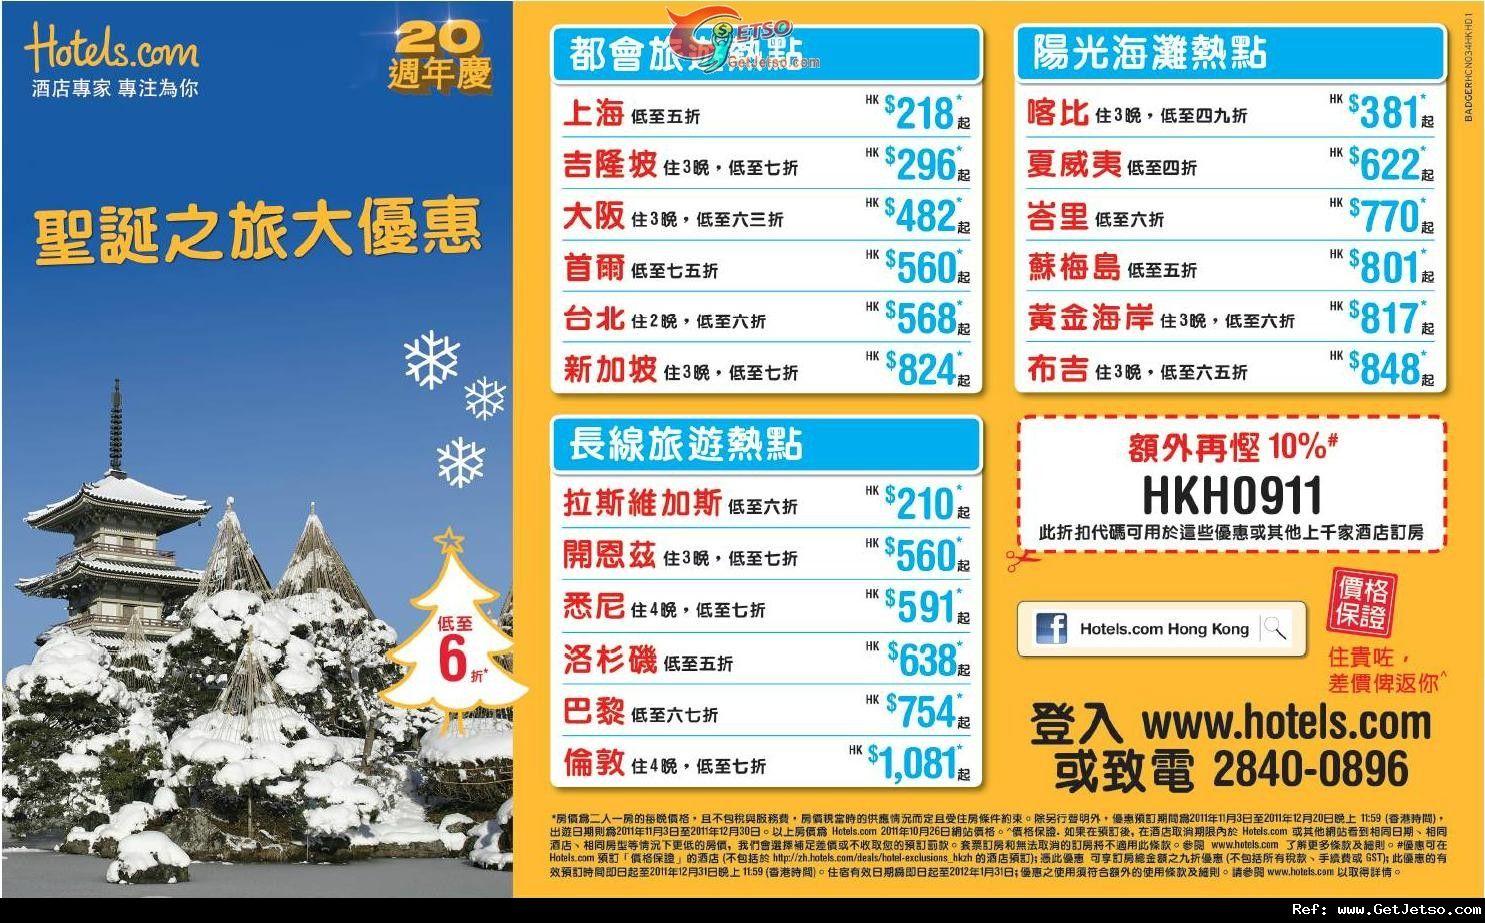 Hotel.com 聖誕之旅酒店低於半價優惠(至11年12月20日)圖片1